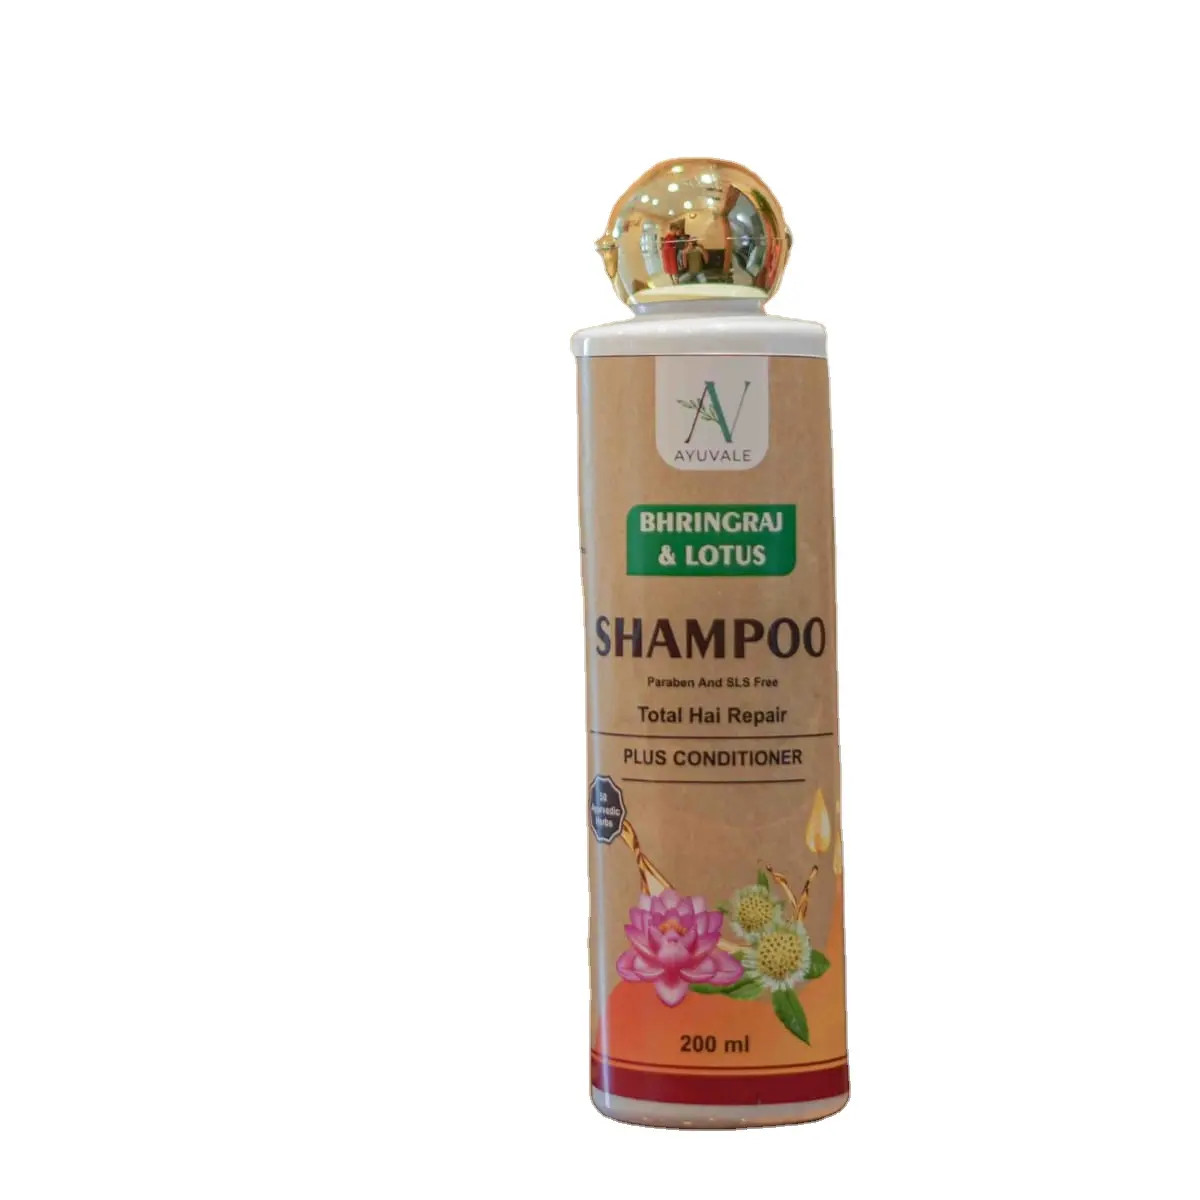 Yeni varış doğal şampuan fabrika kaynağı profesyonel sülfat argan inceltme şampuan organik şampuan kremi